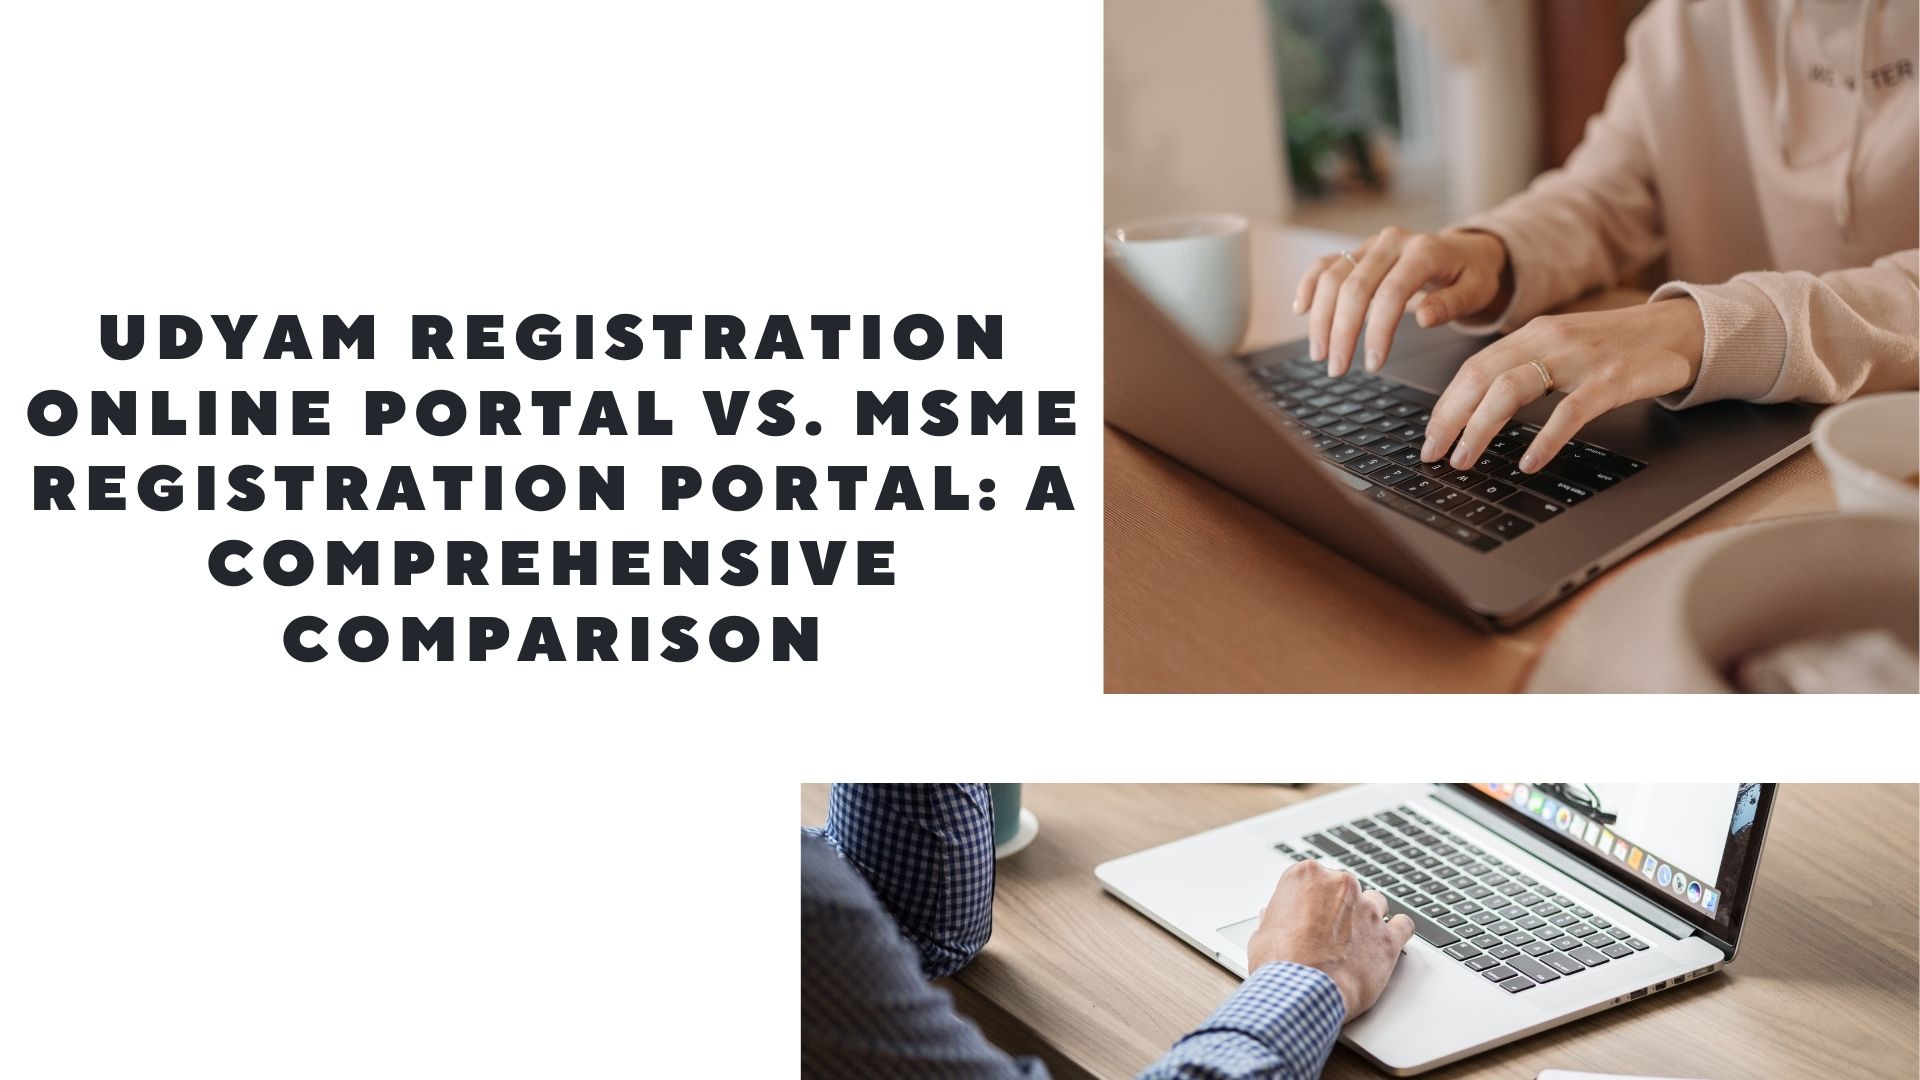 Udyam Registration Online Portal vs. MSME Registration Portal: A Comprehensive Comparison